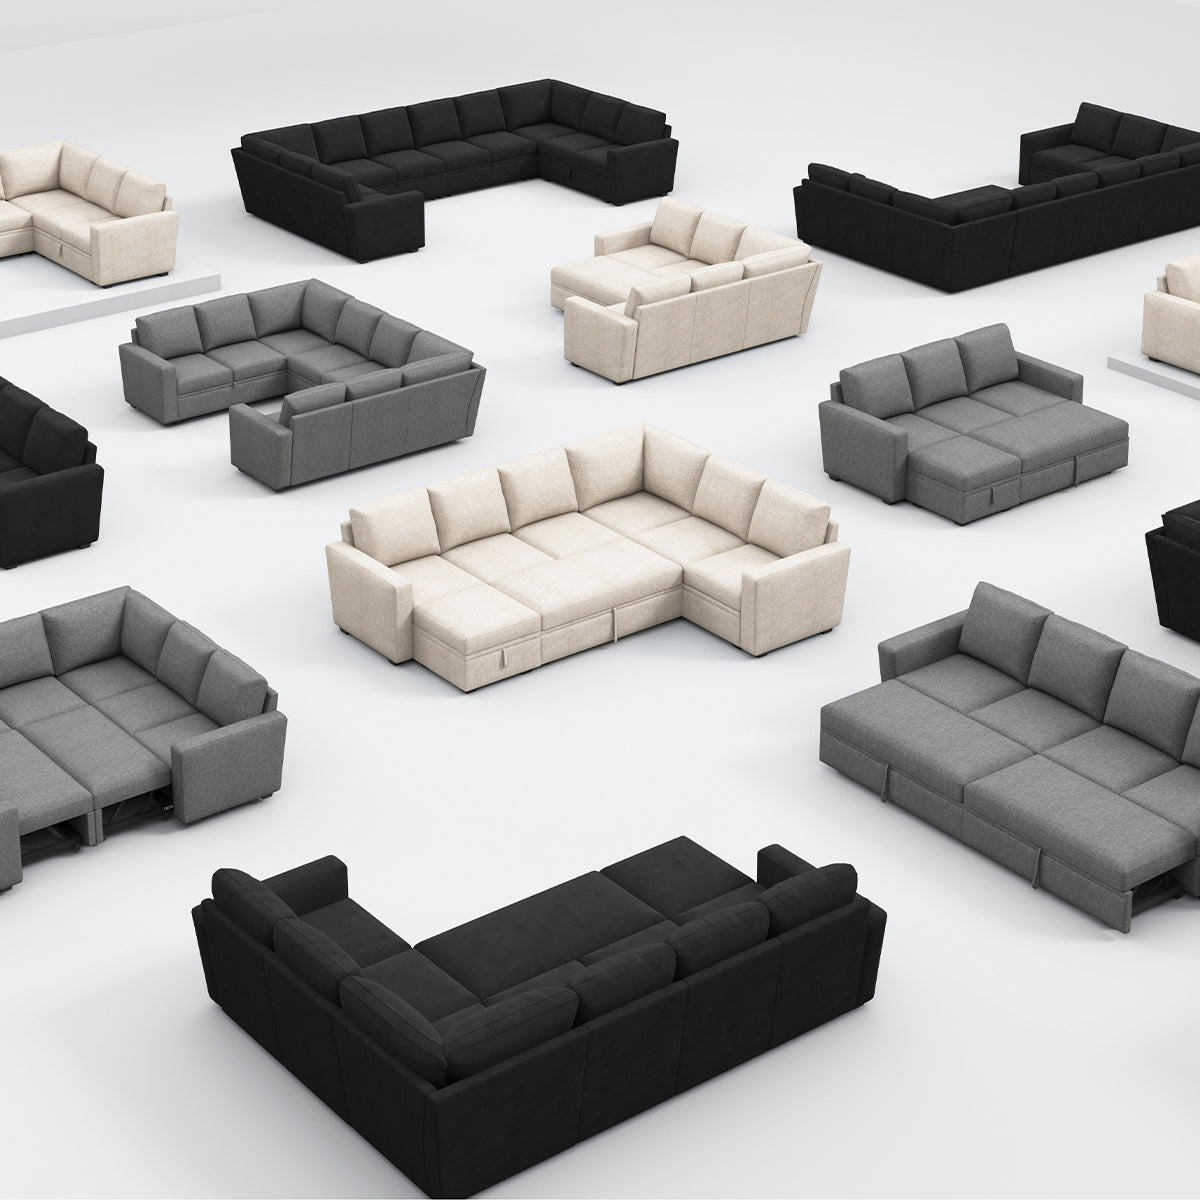 Exploring the Modular Sofa Trend